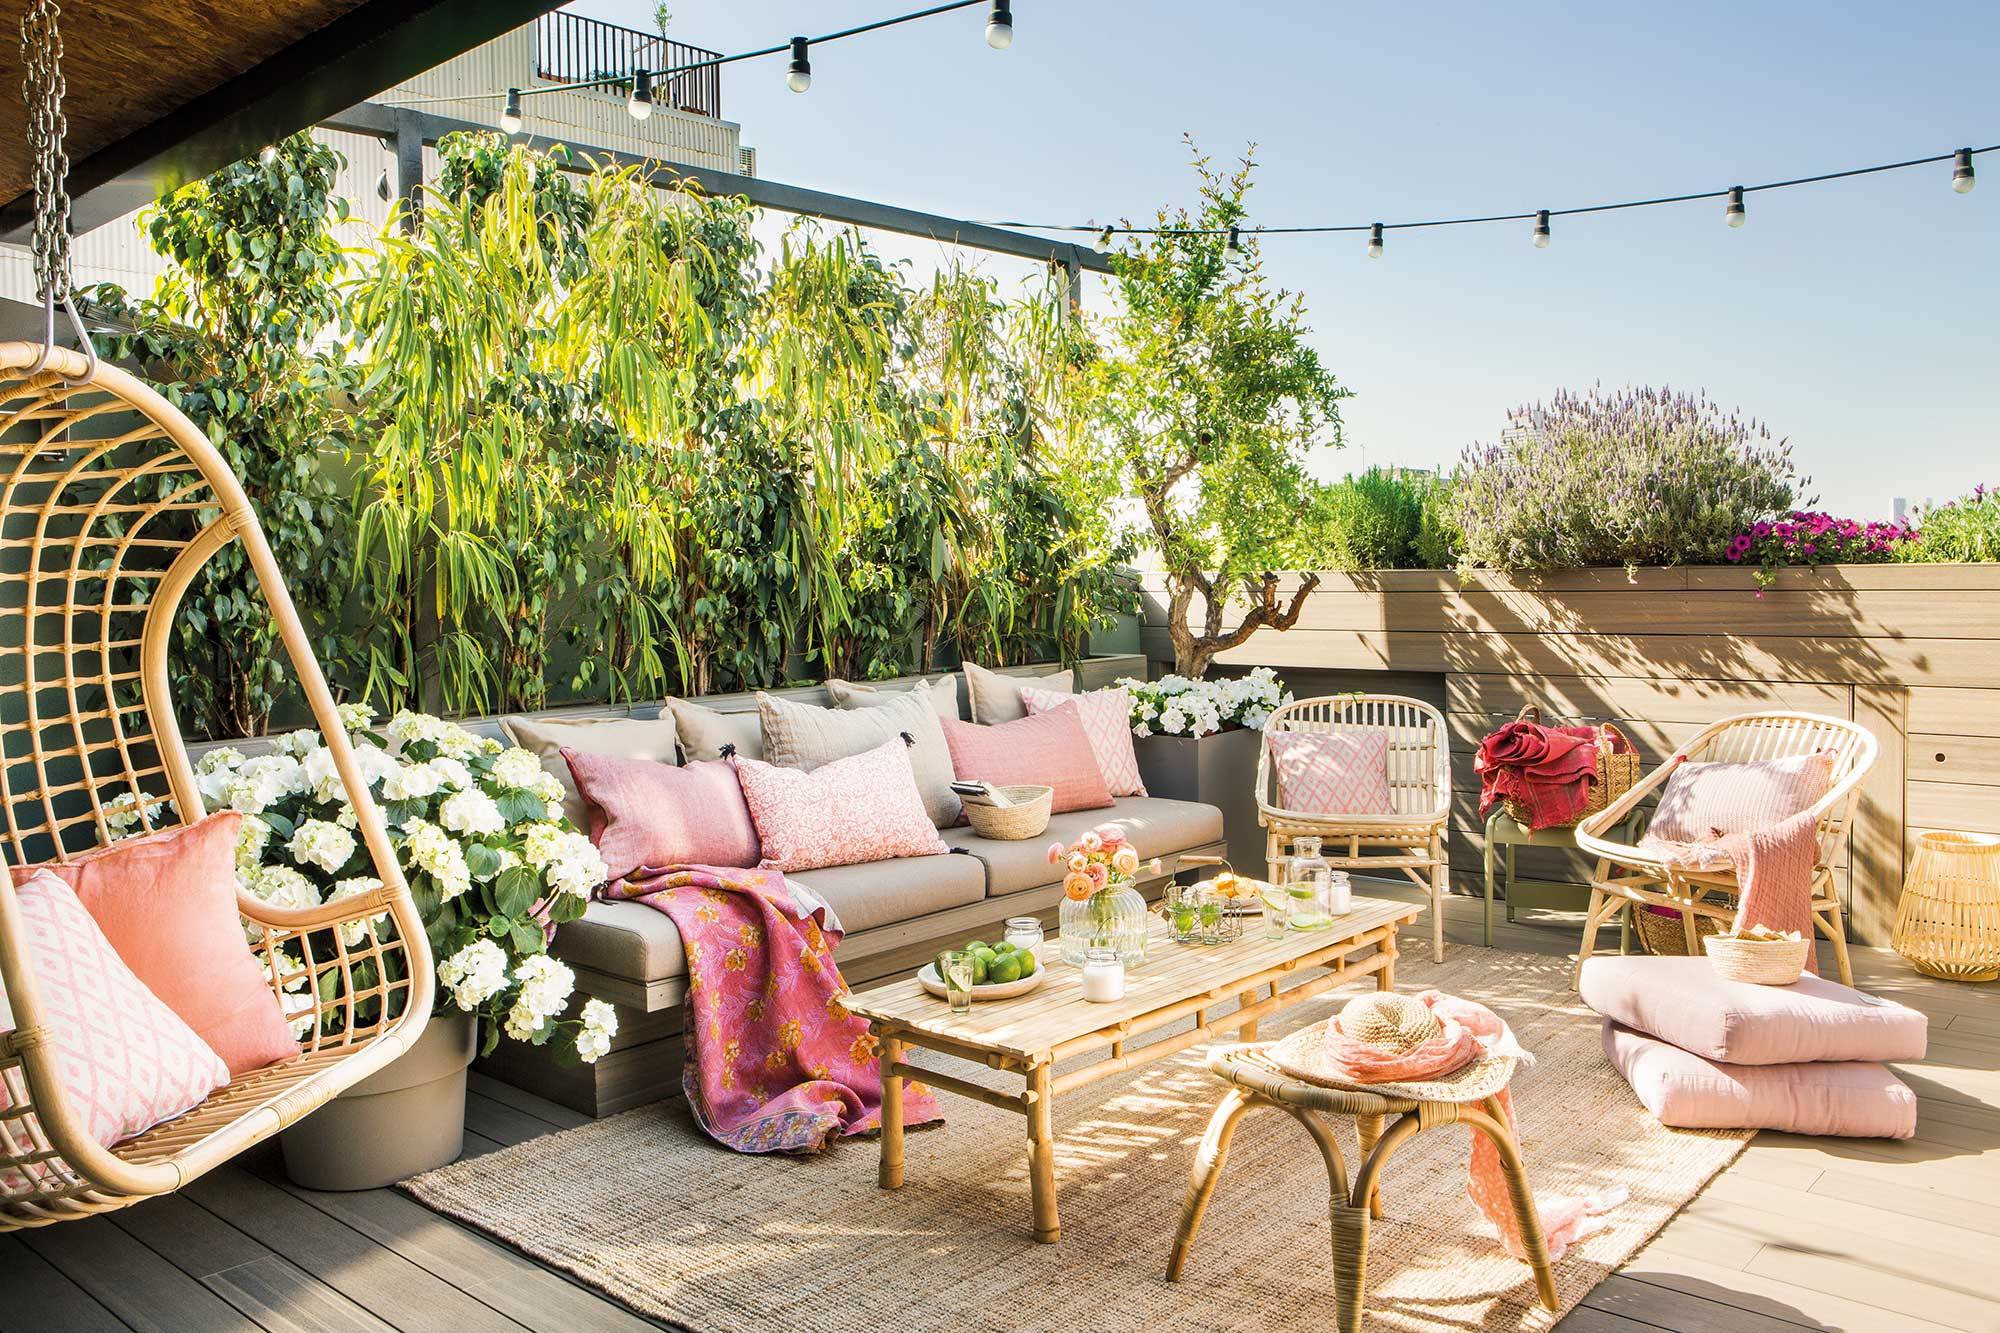 Cuando se trata de aprovechar al máximo el espacio al aire libre, decorar terrazas grandes, es un lienzo perfecto para expresar tu estilo personal y crear un oasis de relajación y entretenimiento en tu hogar.